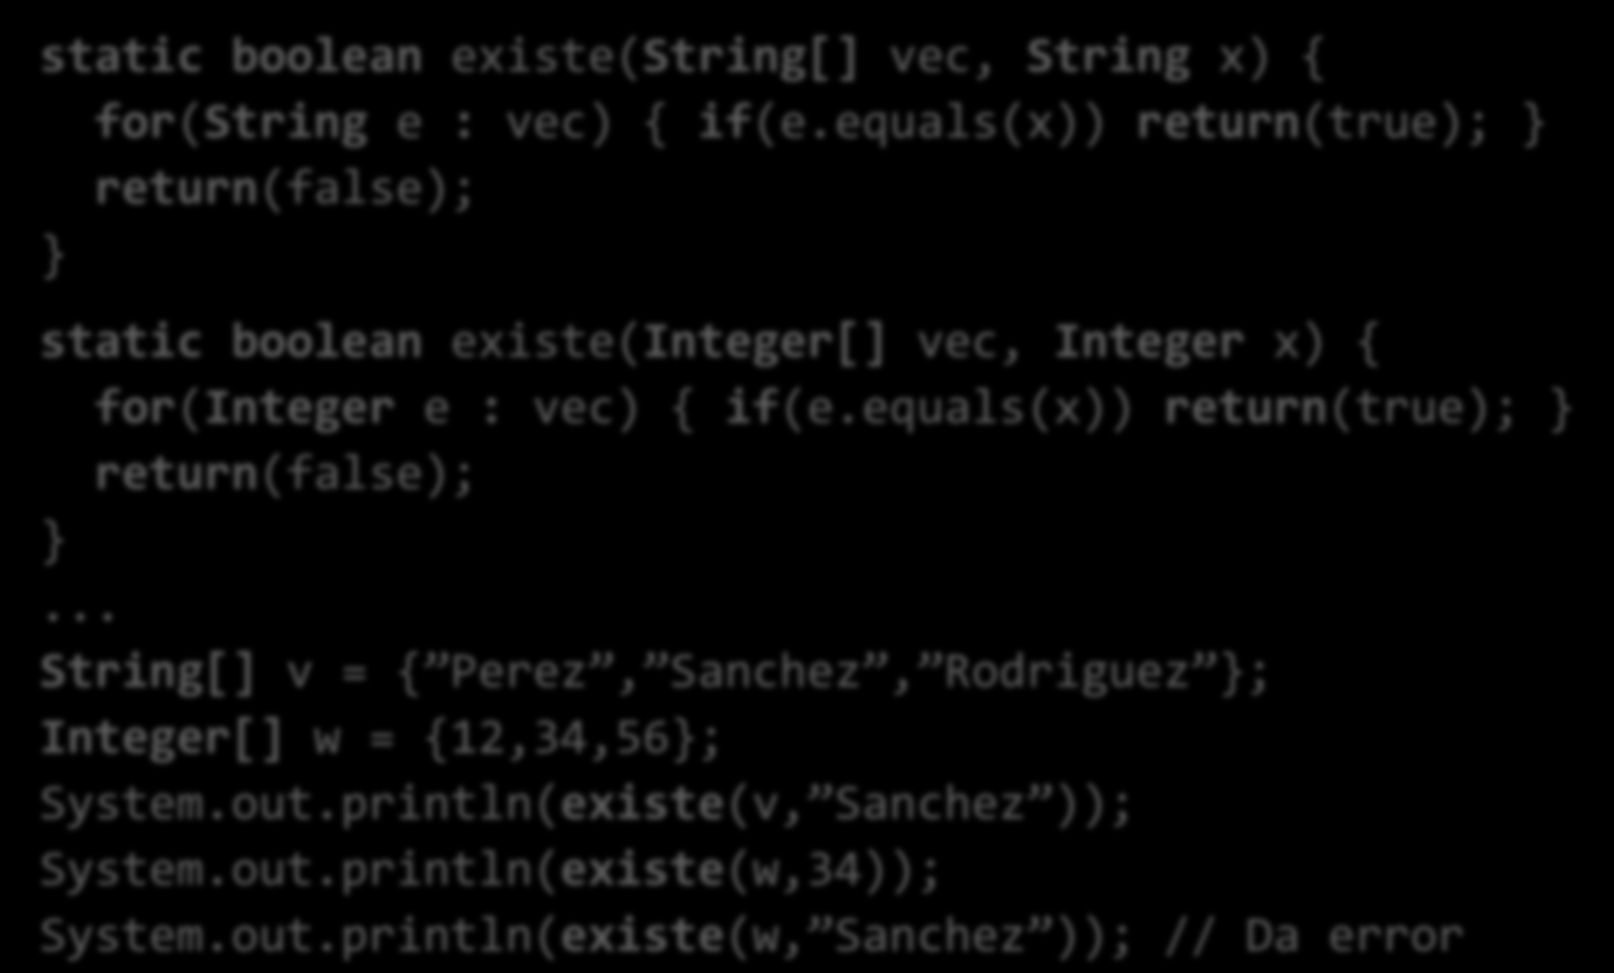 Sobrecarga Se pueden definir métodos con el mismo nombre siempre que el tipo de los parámetros difiera. static boolean existe(string[] vec, String x) { for(string e : vec) { if(e.